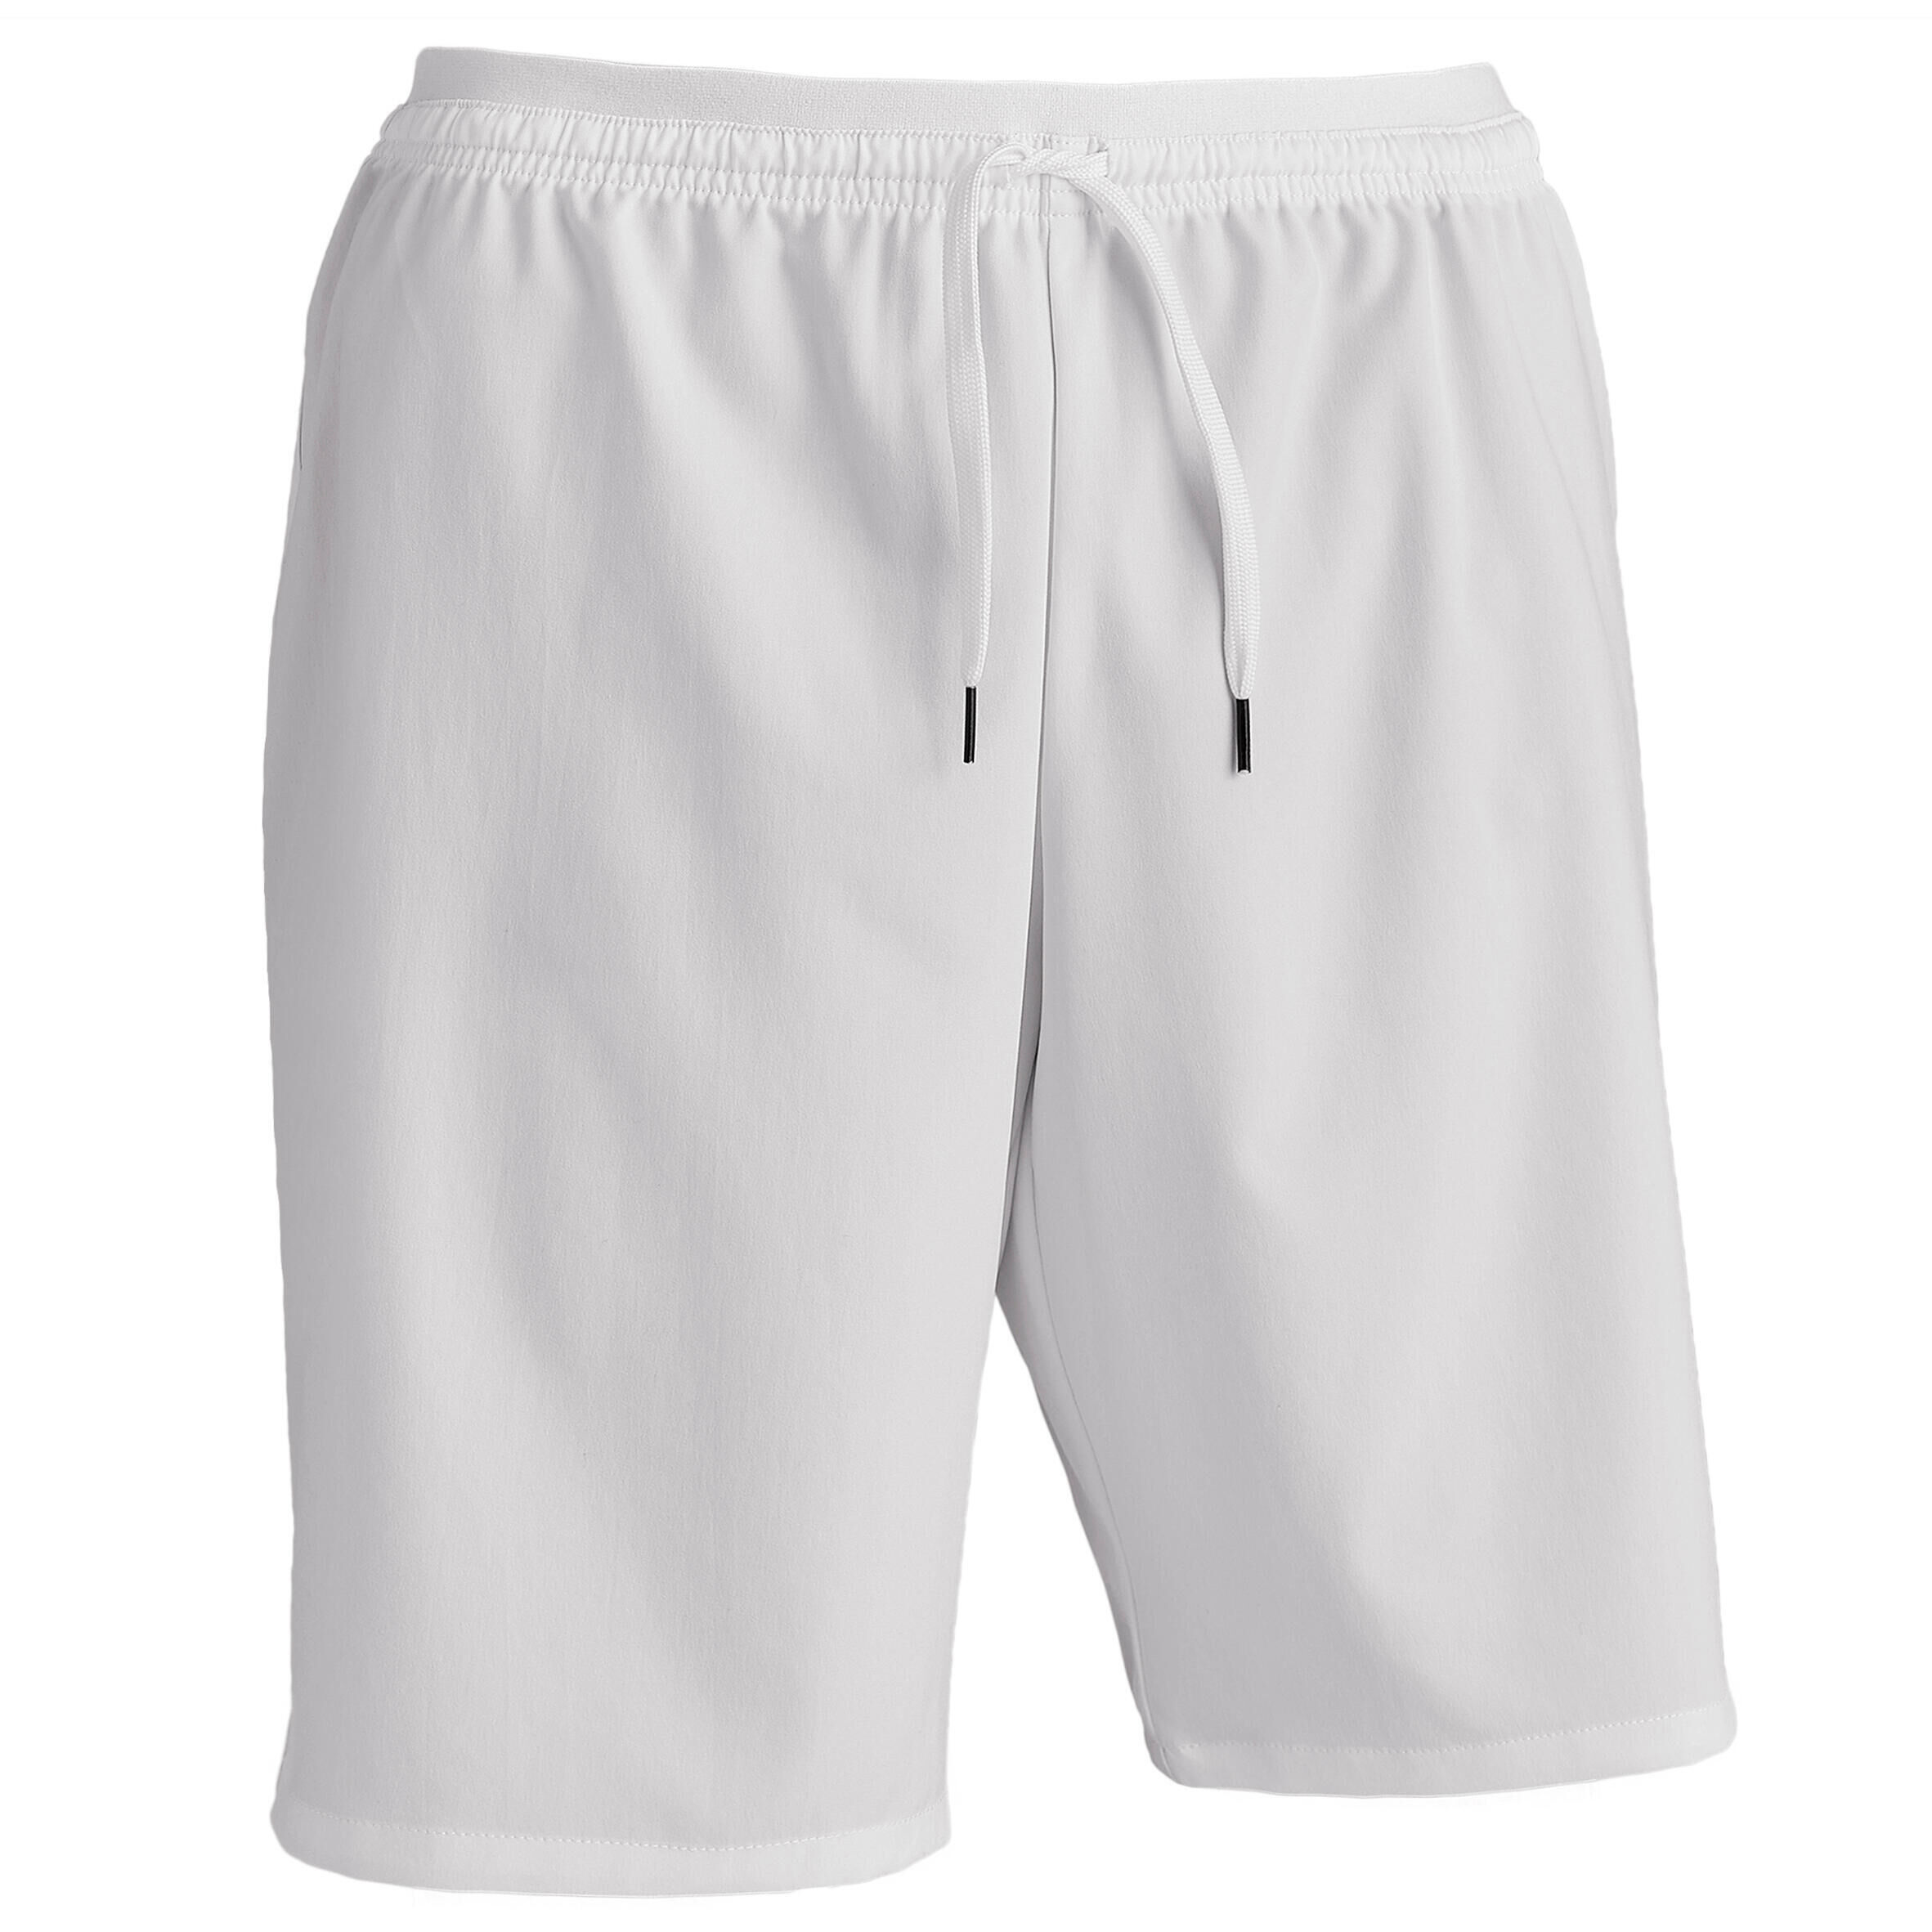 KIPSTA Refurbished Adult Football Shorts Viralto - White - A Grade